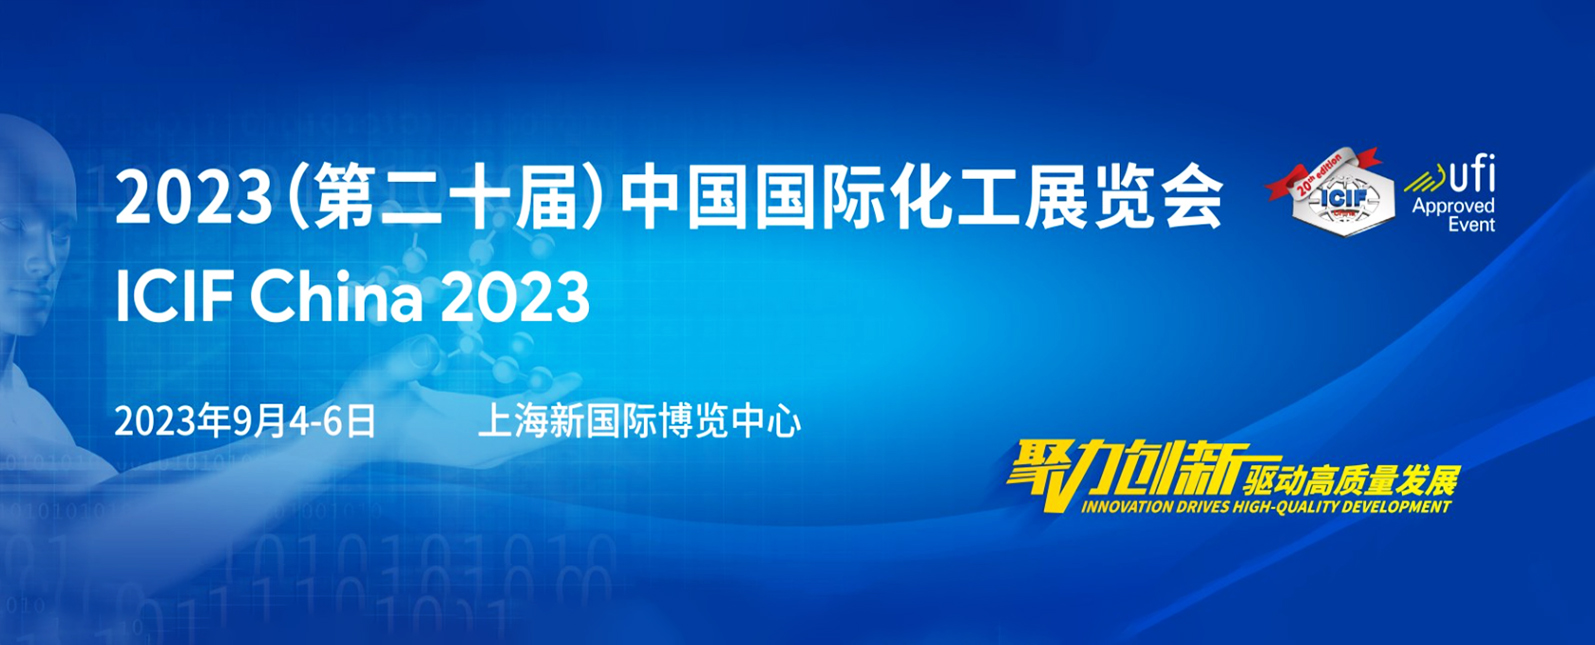 开幕在即！邀您共赴2023中国国际化工展览会